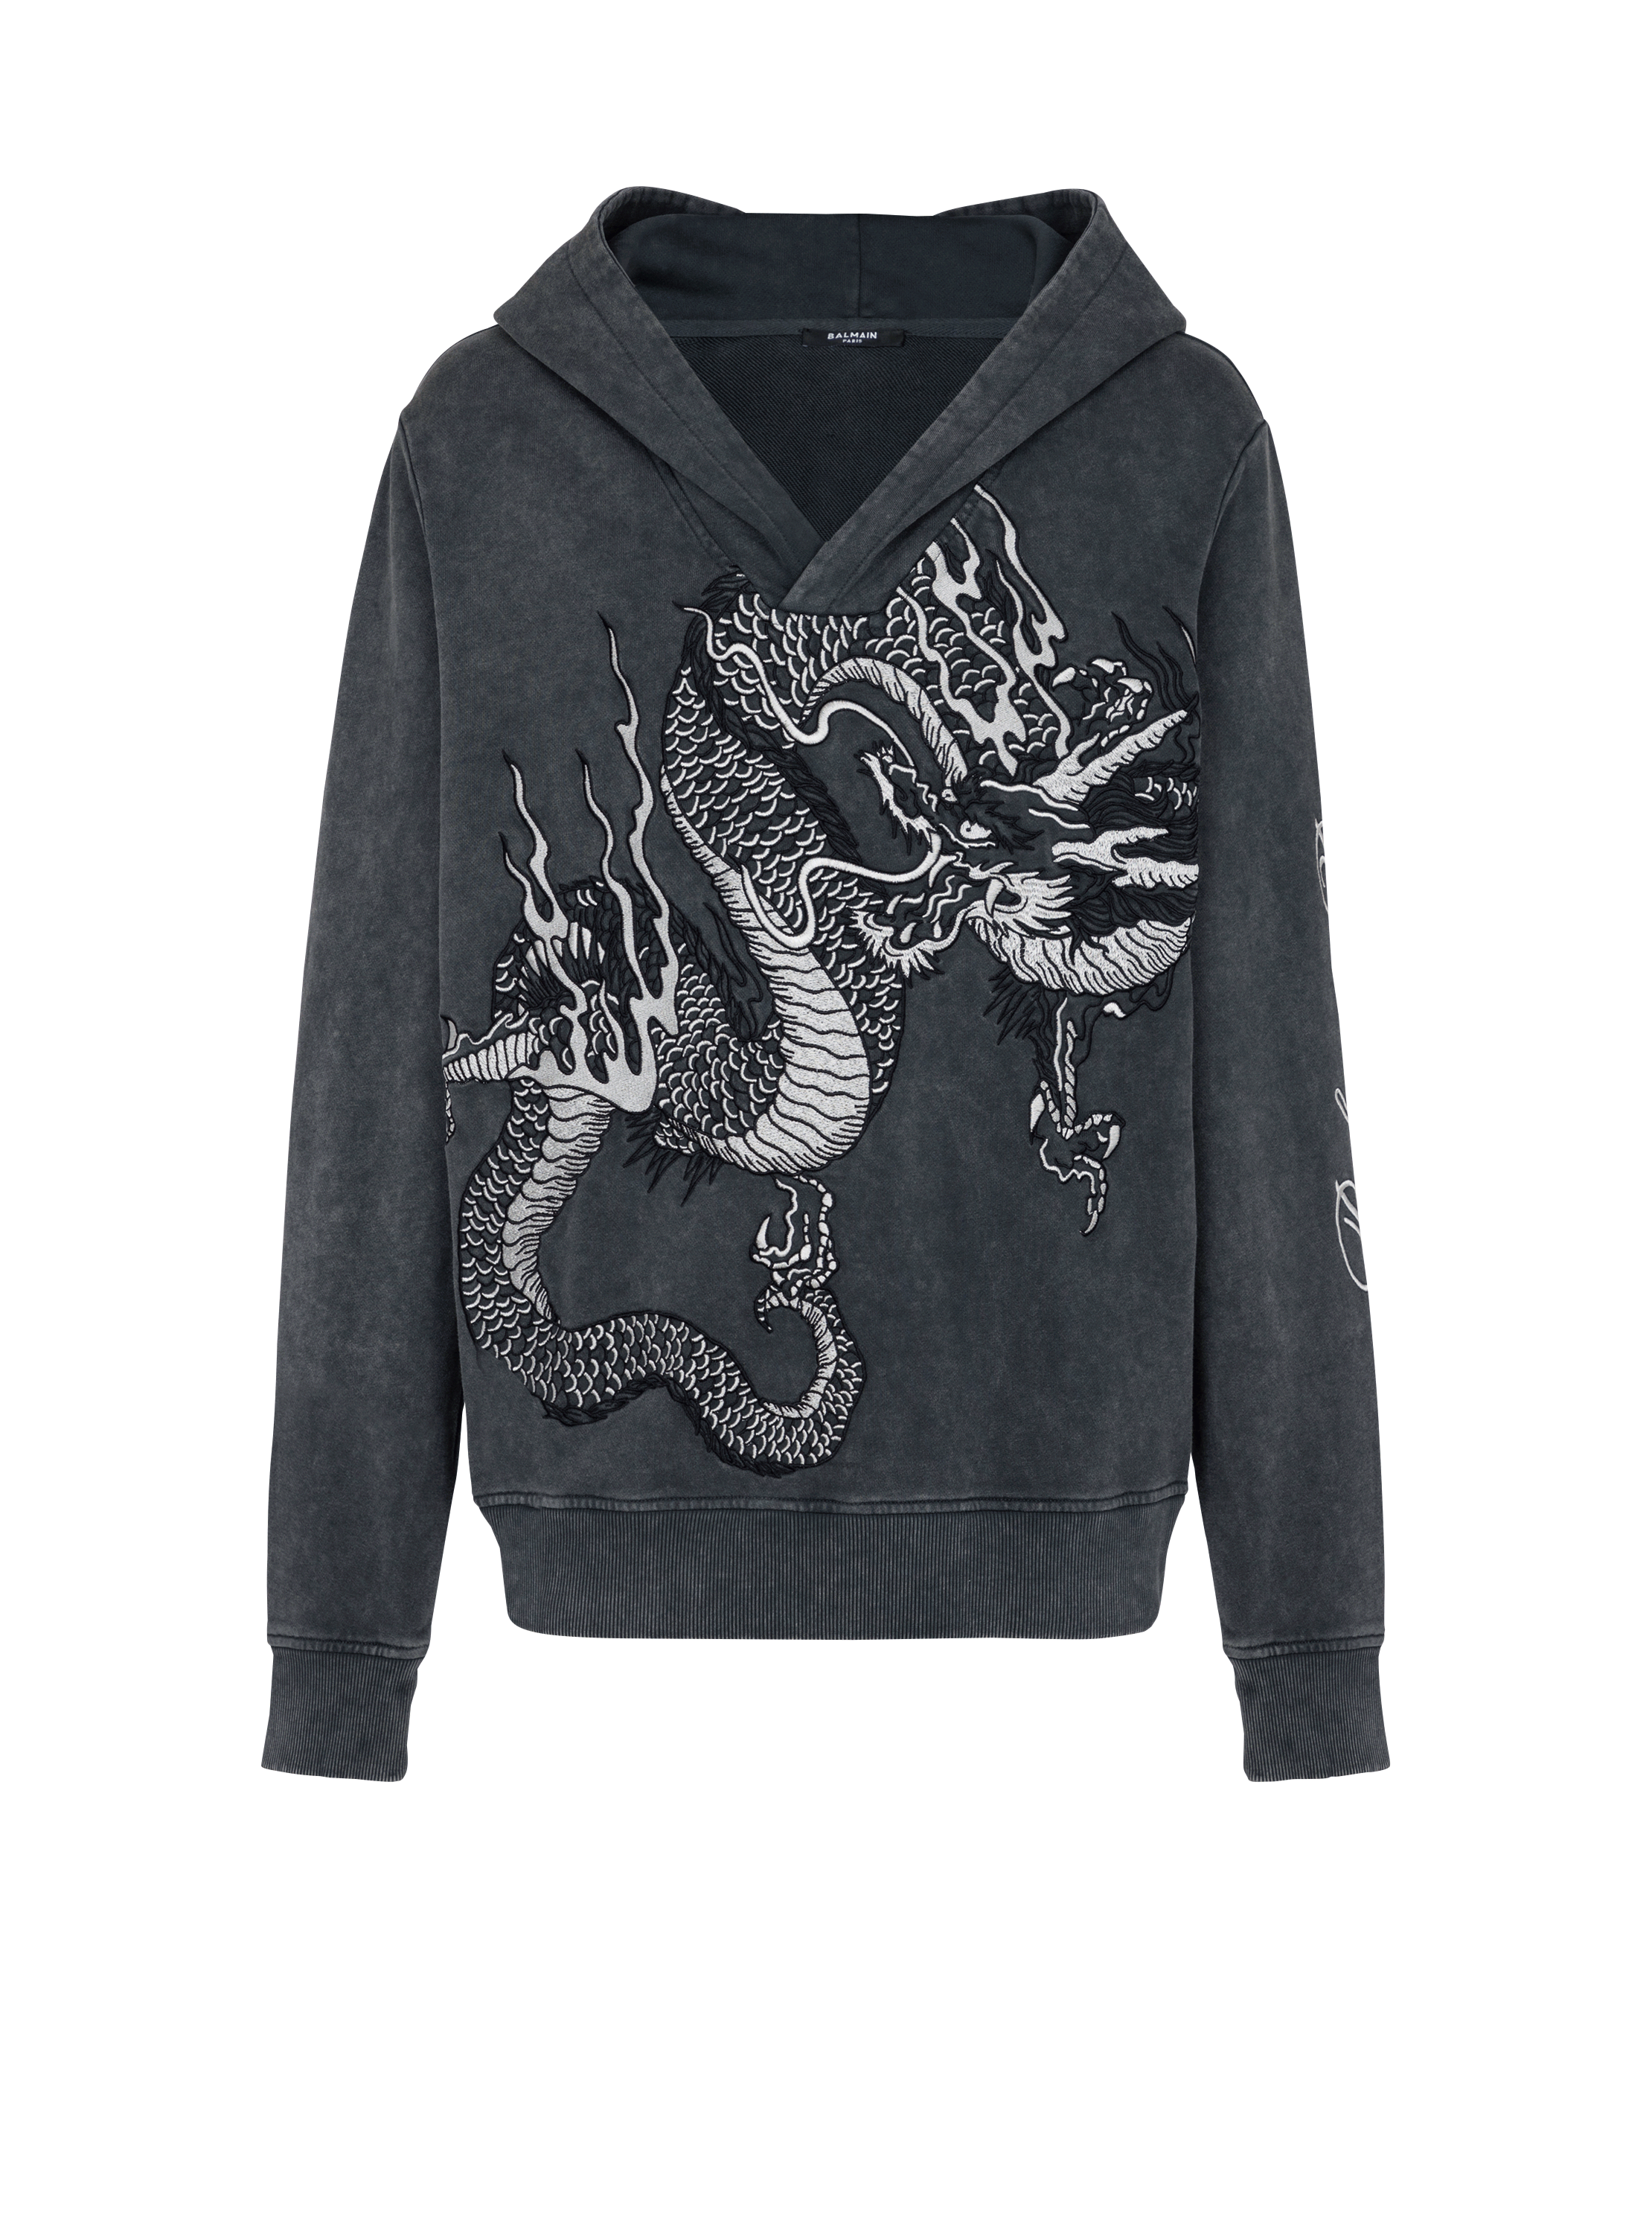 Sweat-shirt brodé Dragon, gris, hi-res